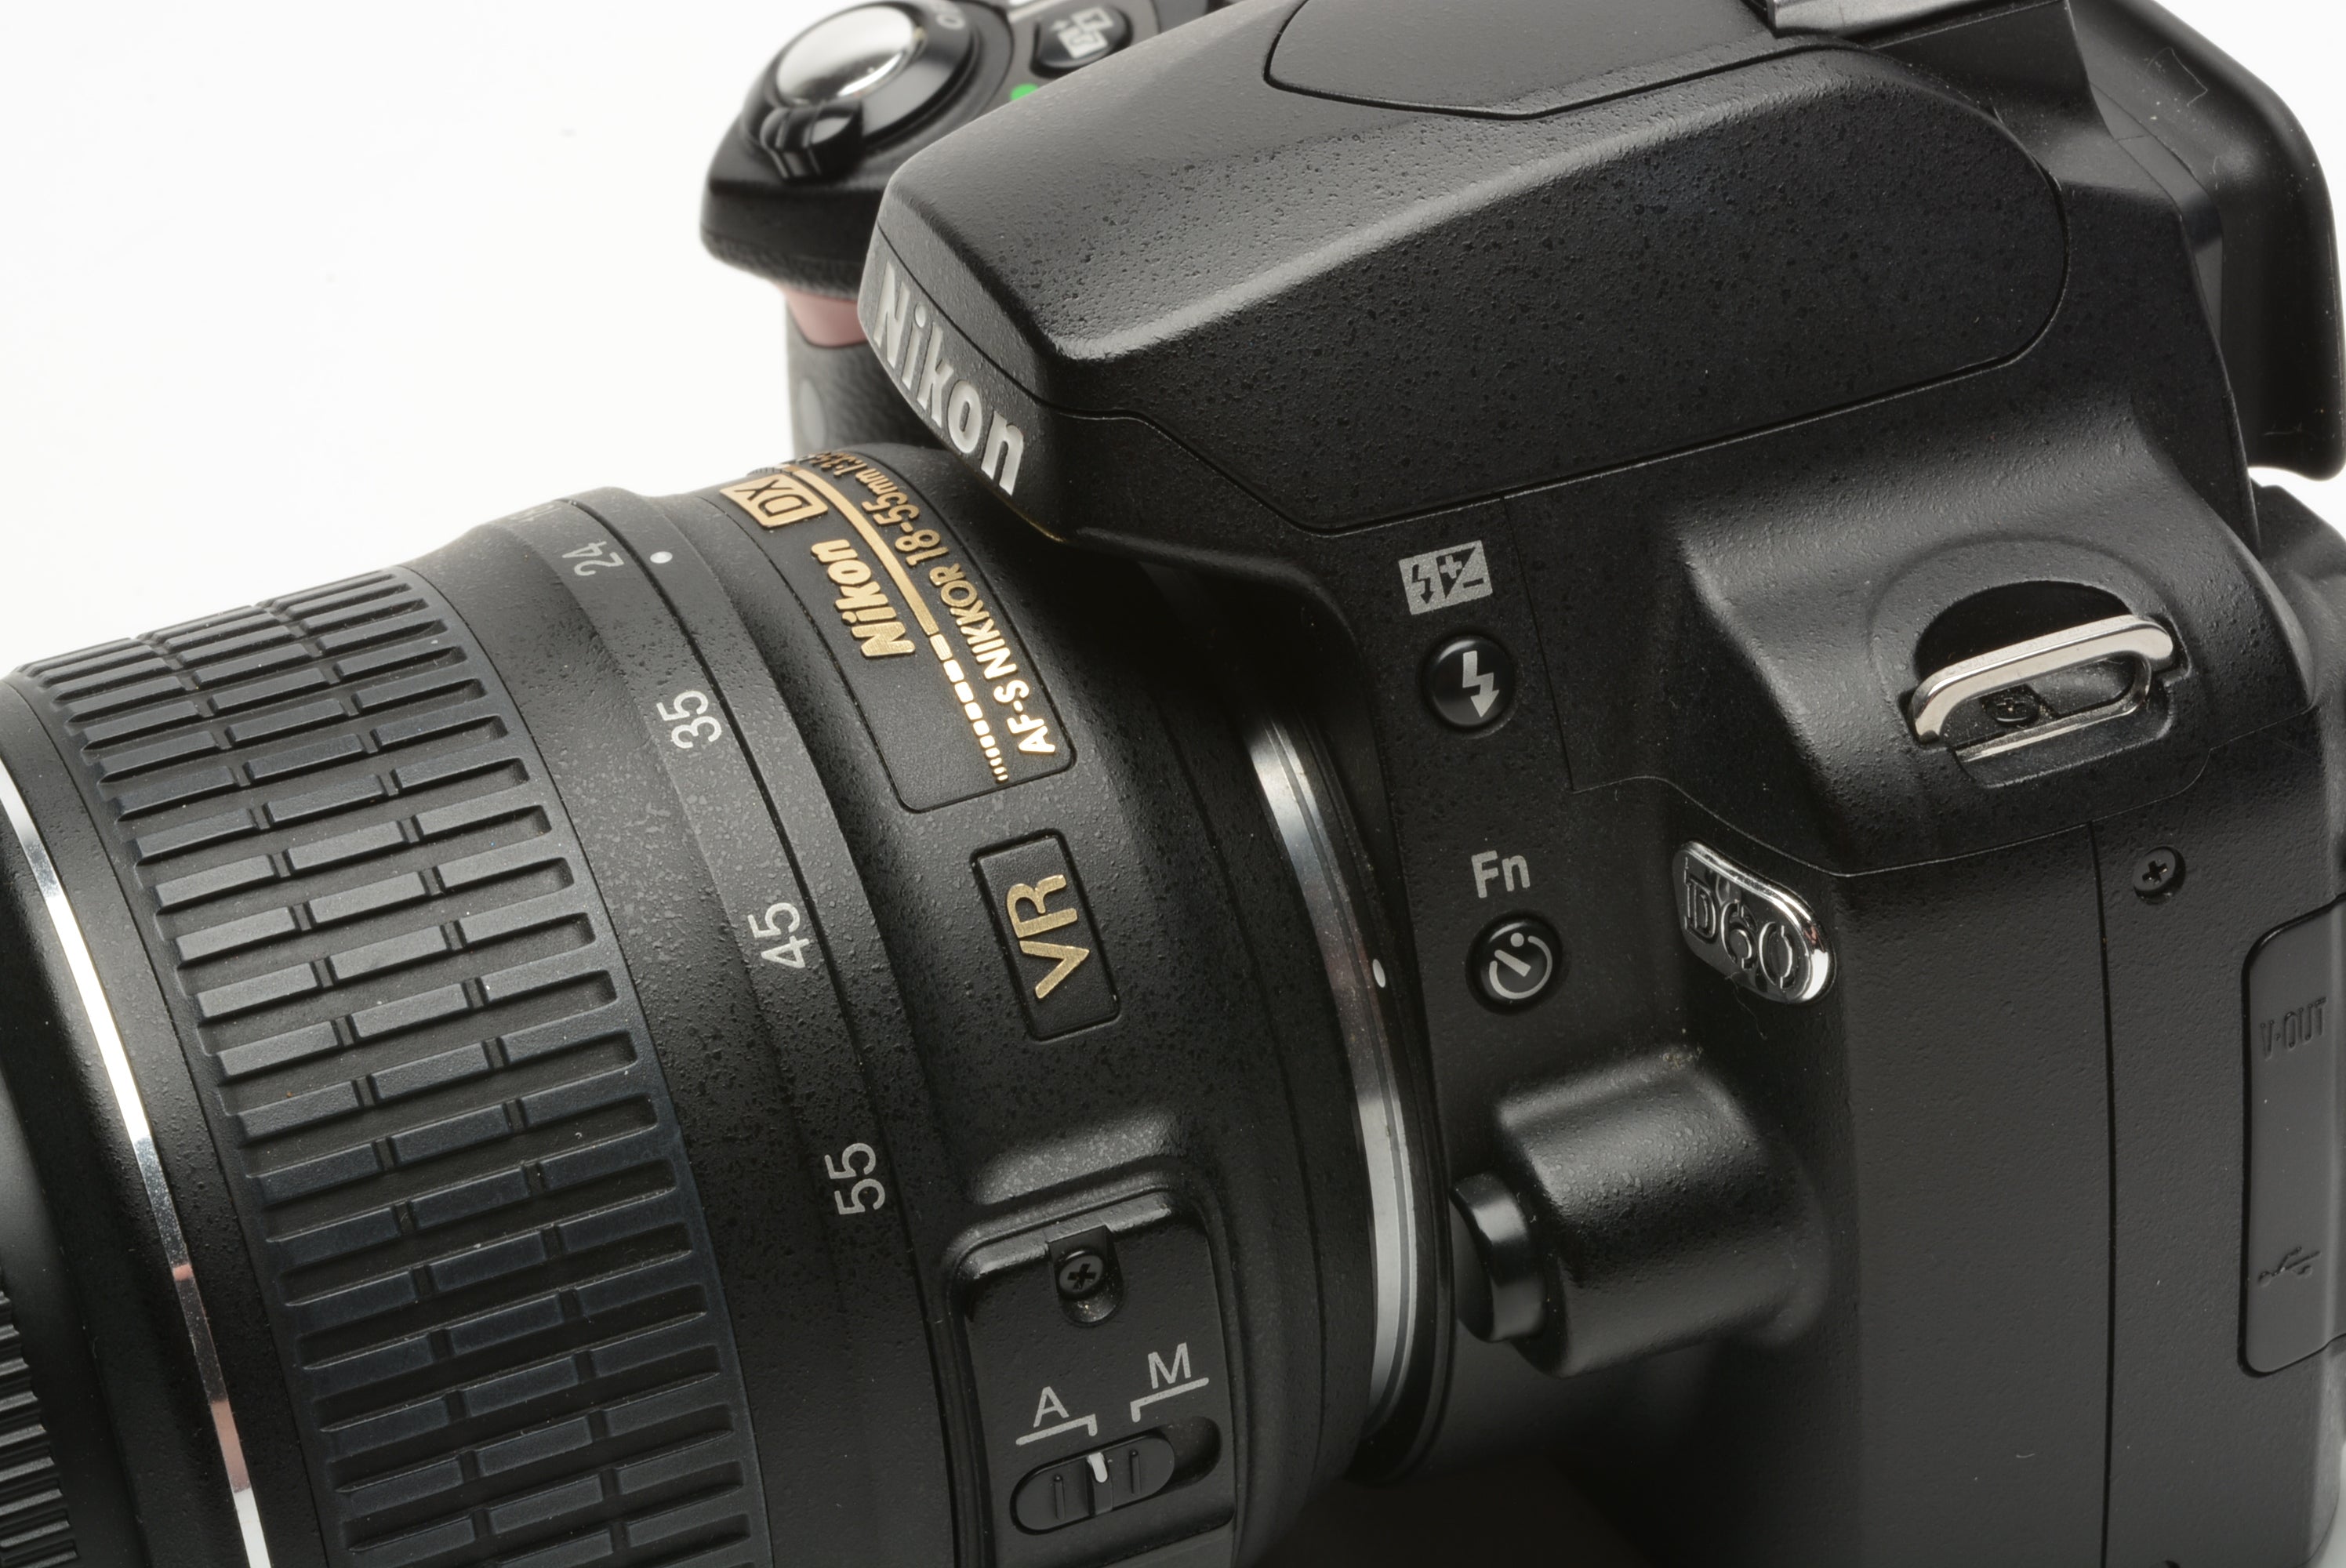 Nikon D60 DSLR body w/18-55mm f3.5-5.6G DX